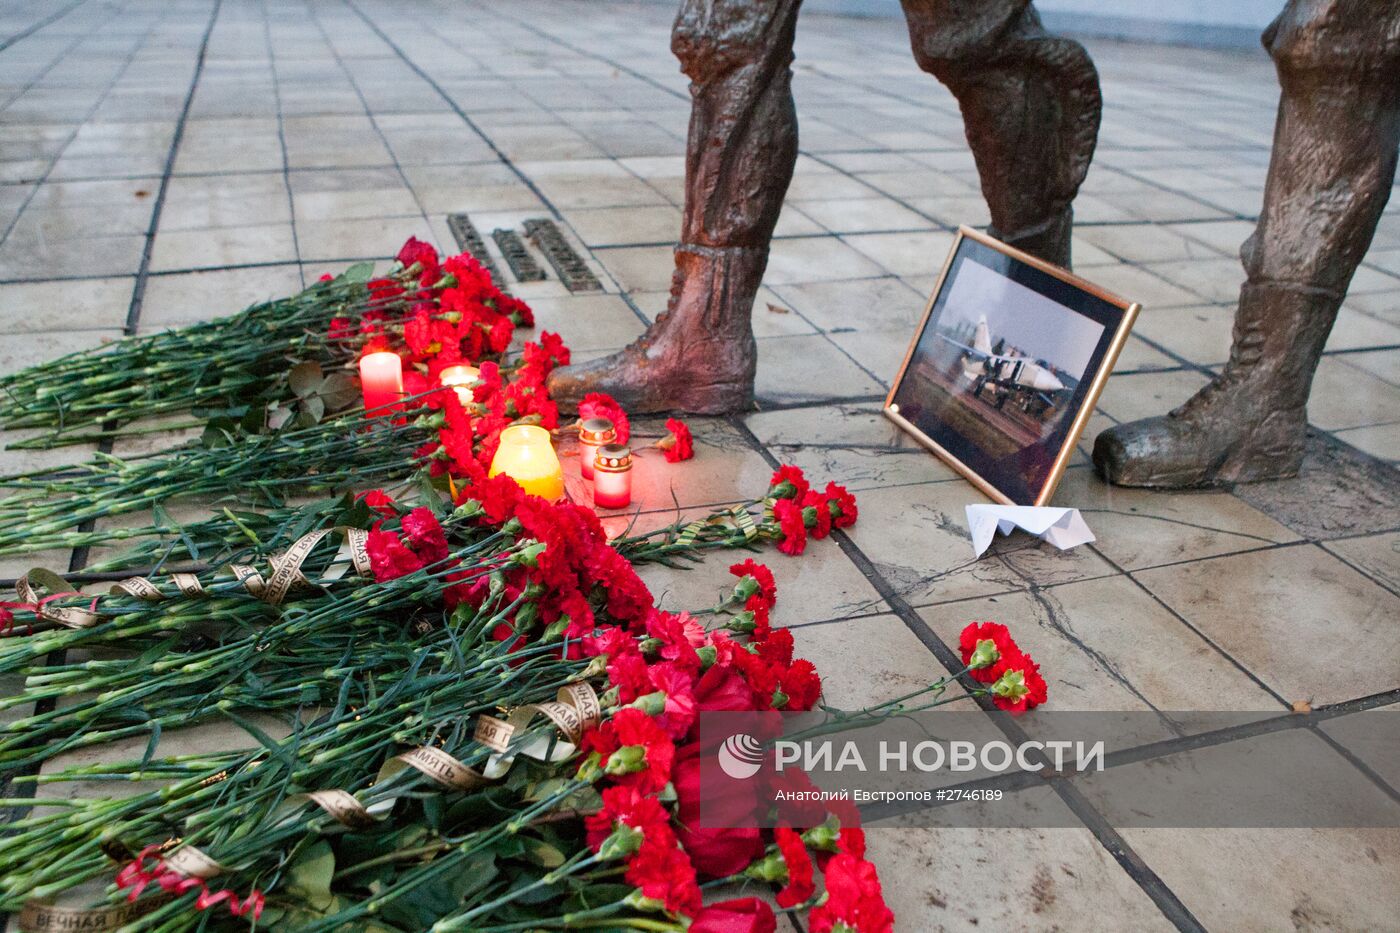 Жители Липецка несут цветы к памятнику авиаторам в центре города